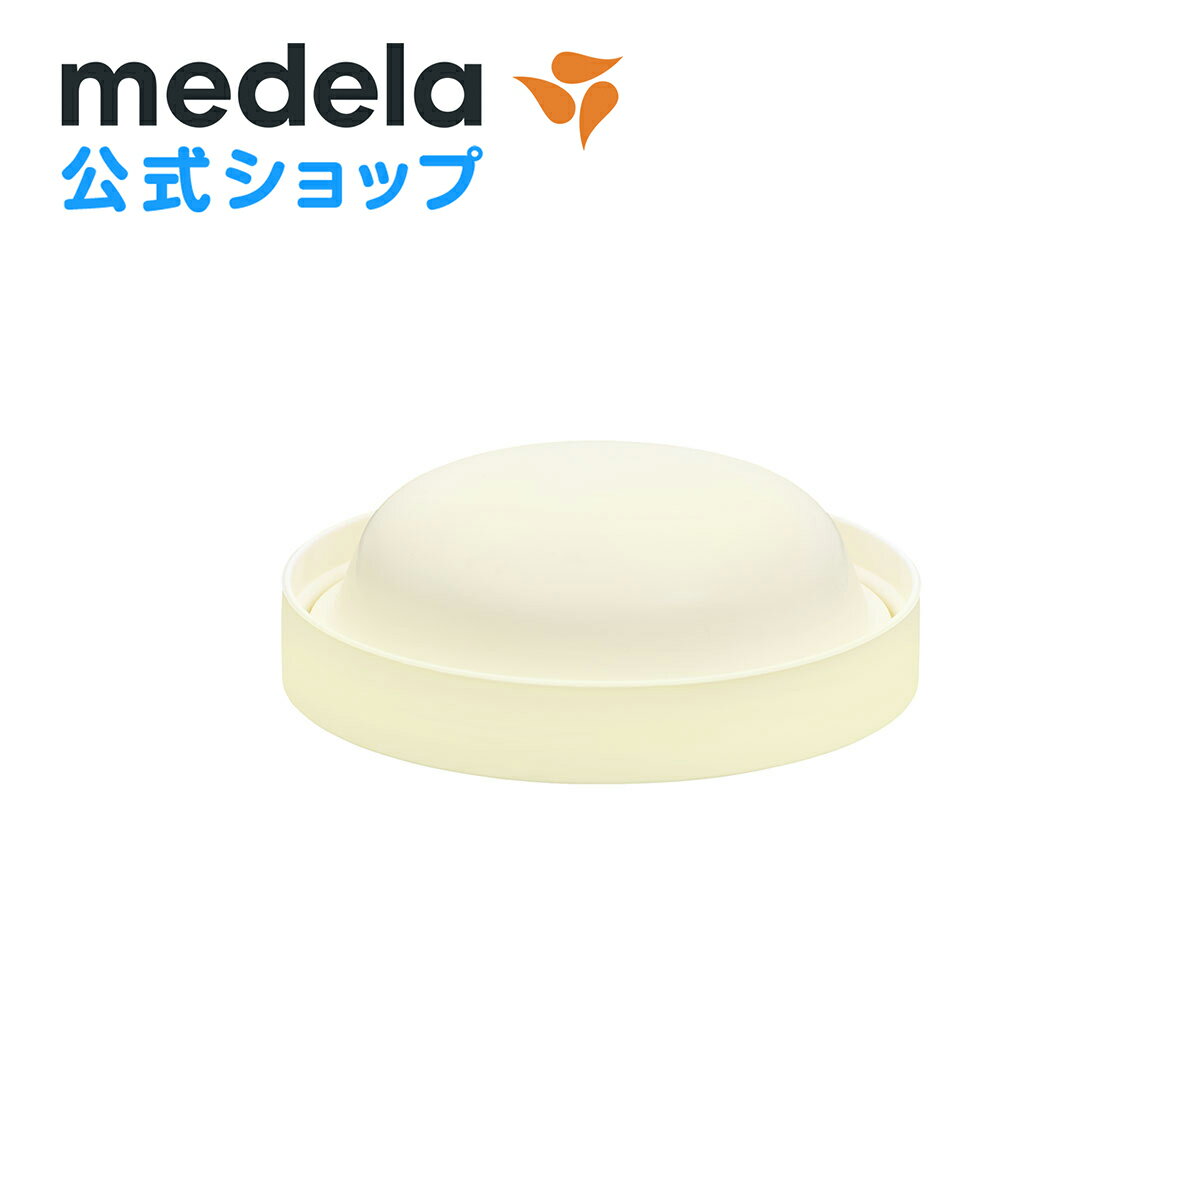 公式 Medela (メデラ) シンフォニー電動さく乳器用 保護カバー パーツ medela 母乳育児